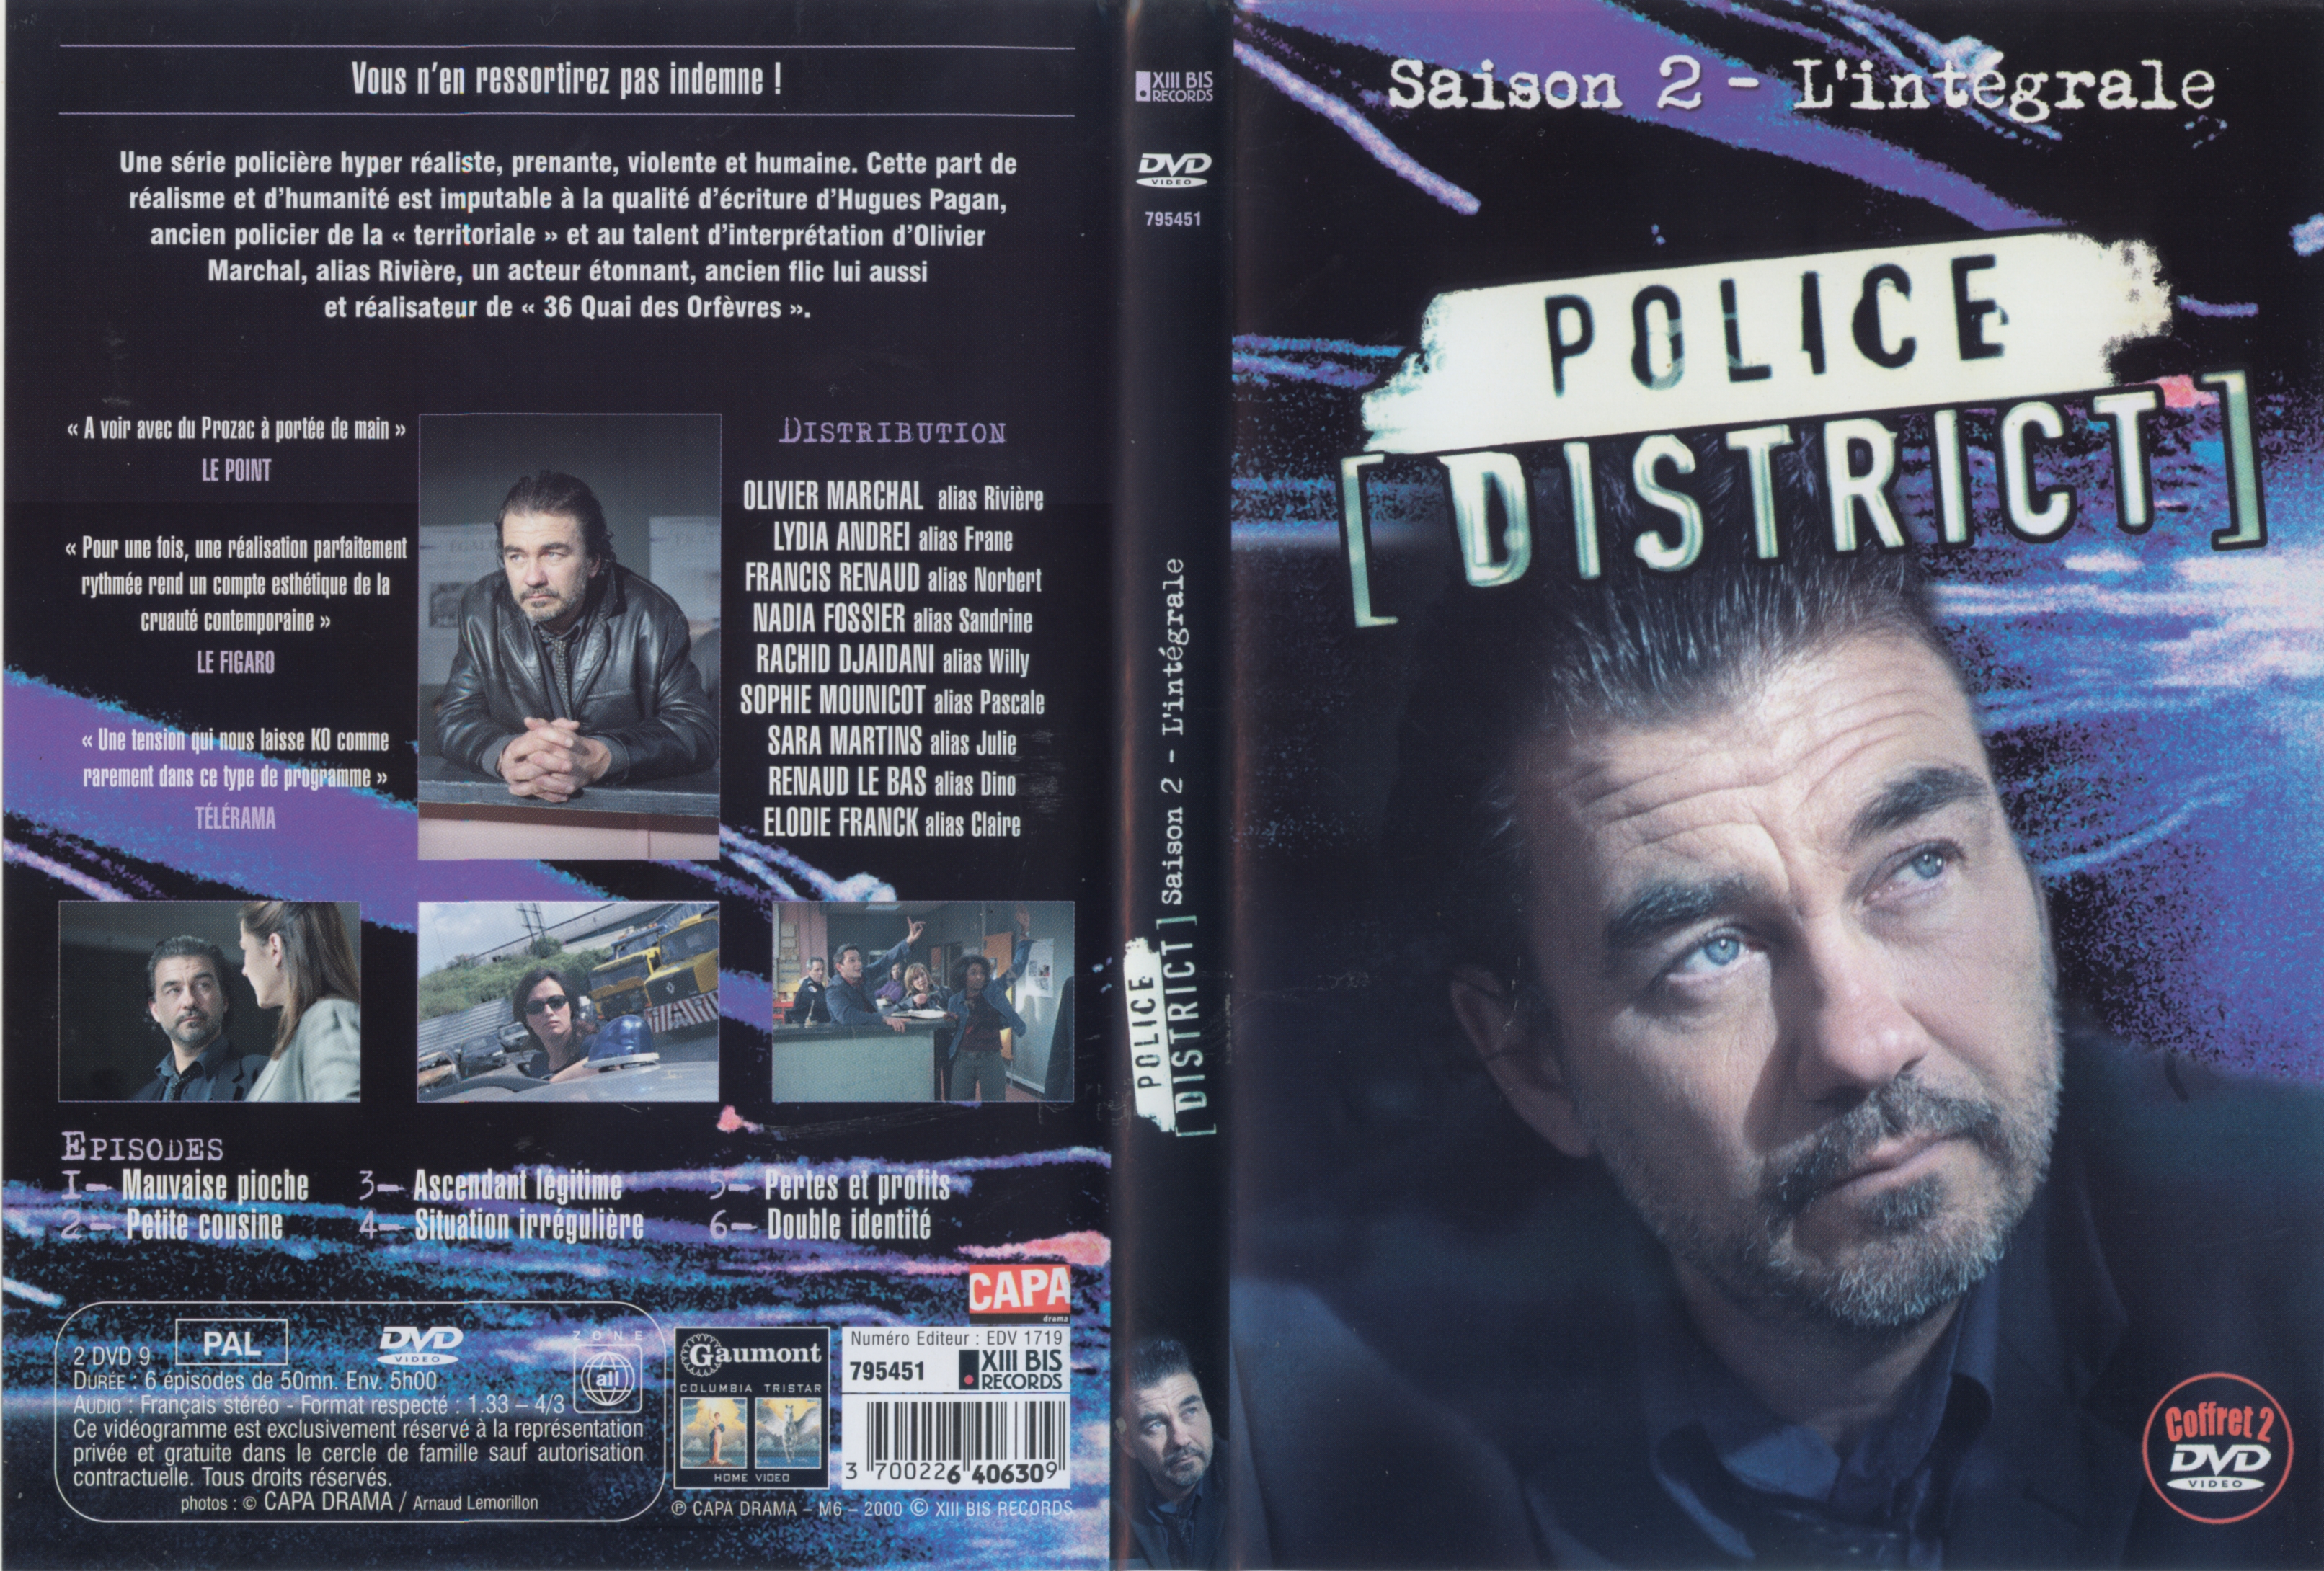 Jaquette DVD Police District Saison 2 COFFRET